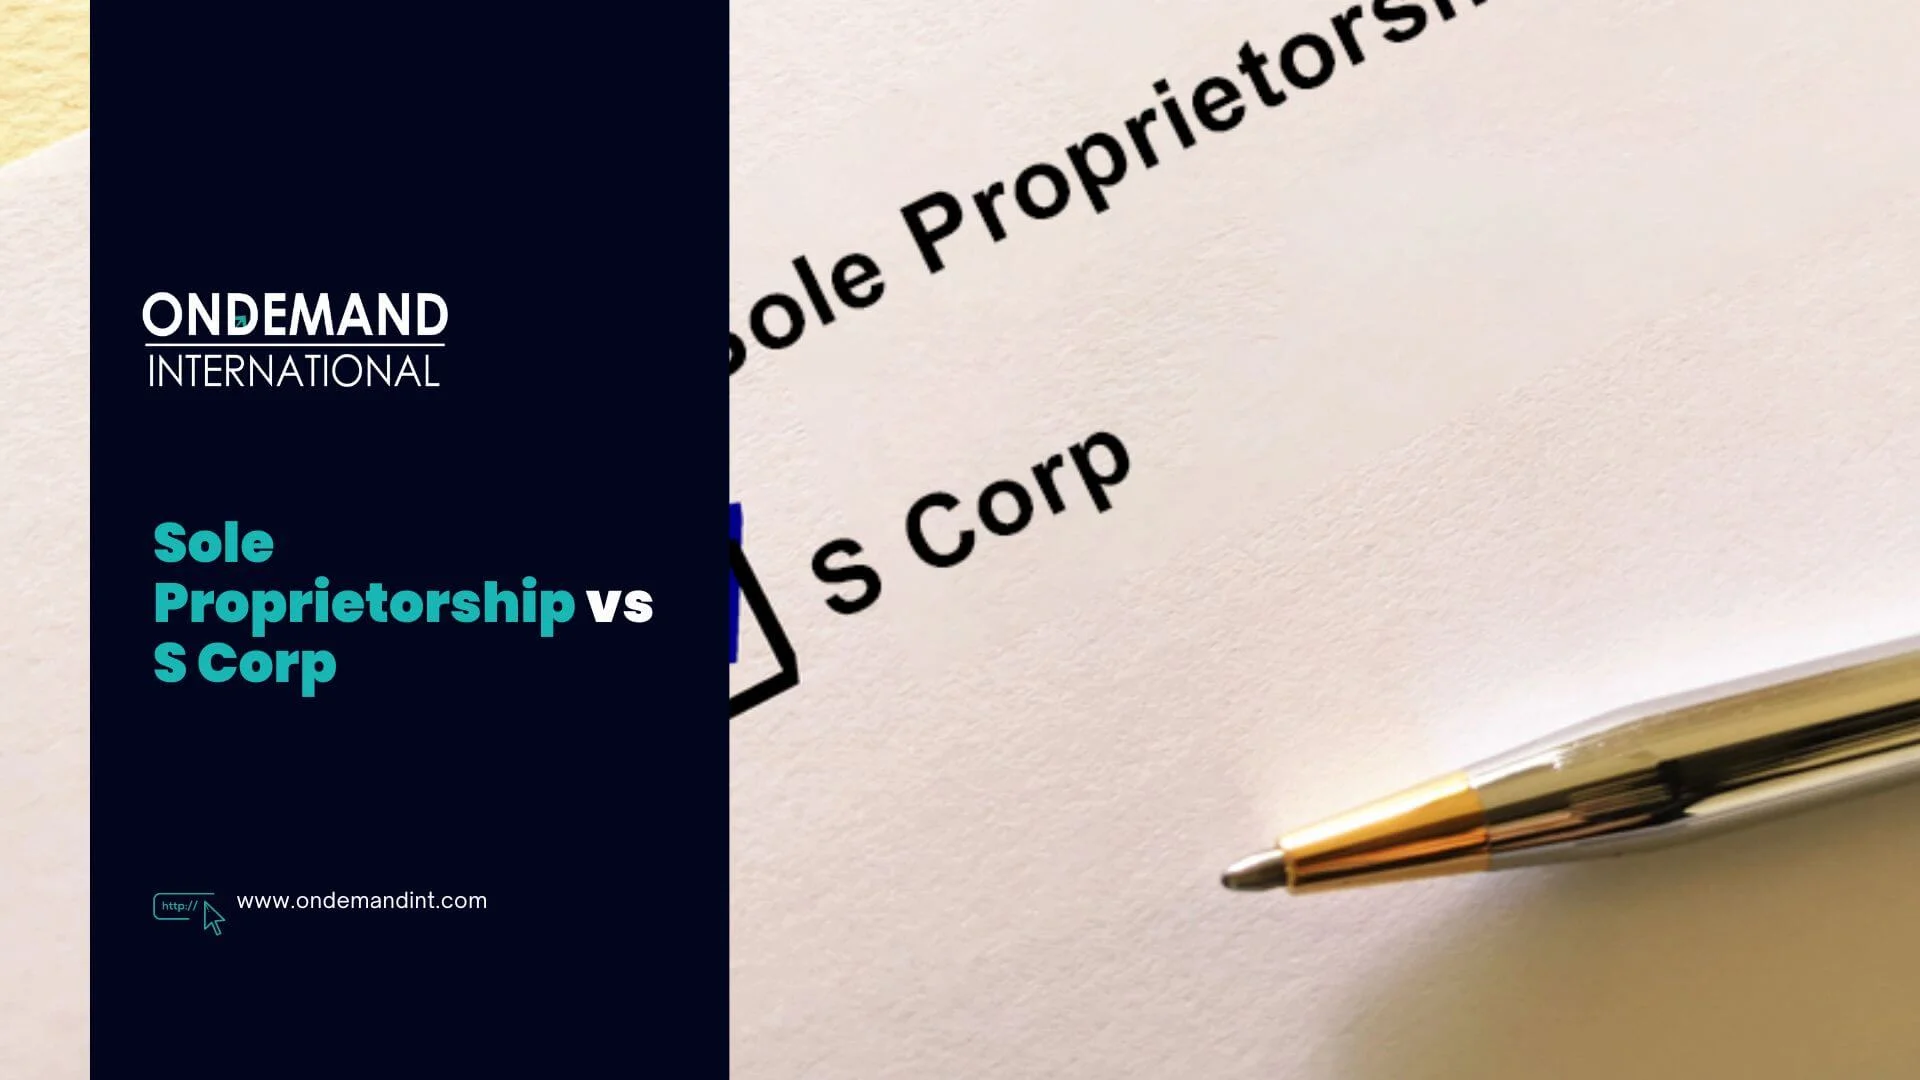 Sole Proprietorship vs S Corp: The Best Business Structure